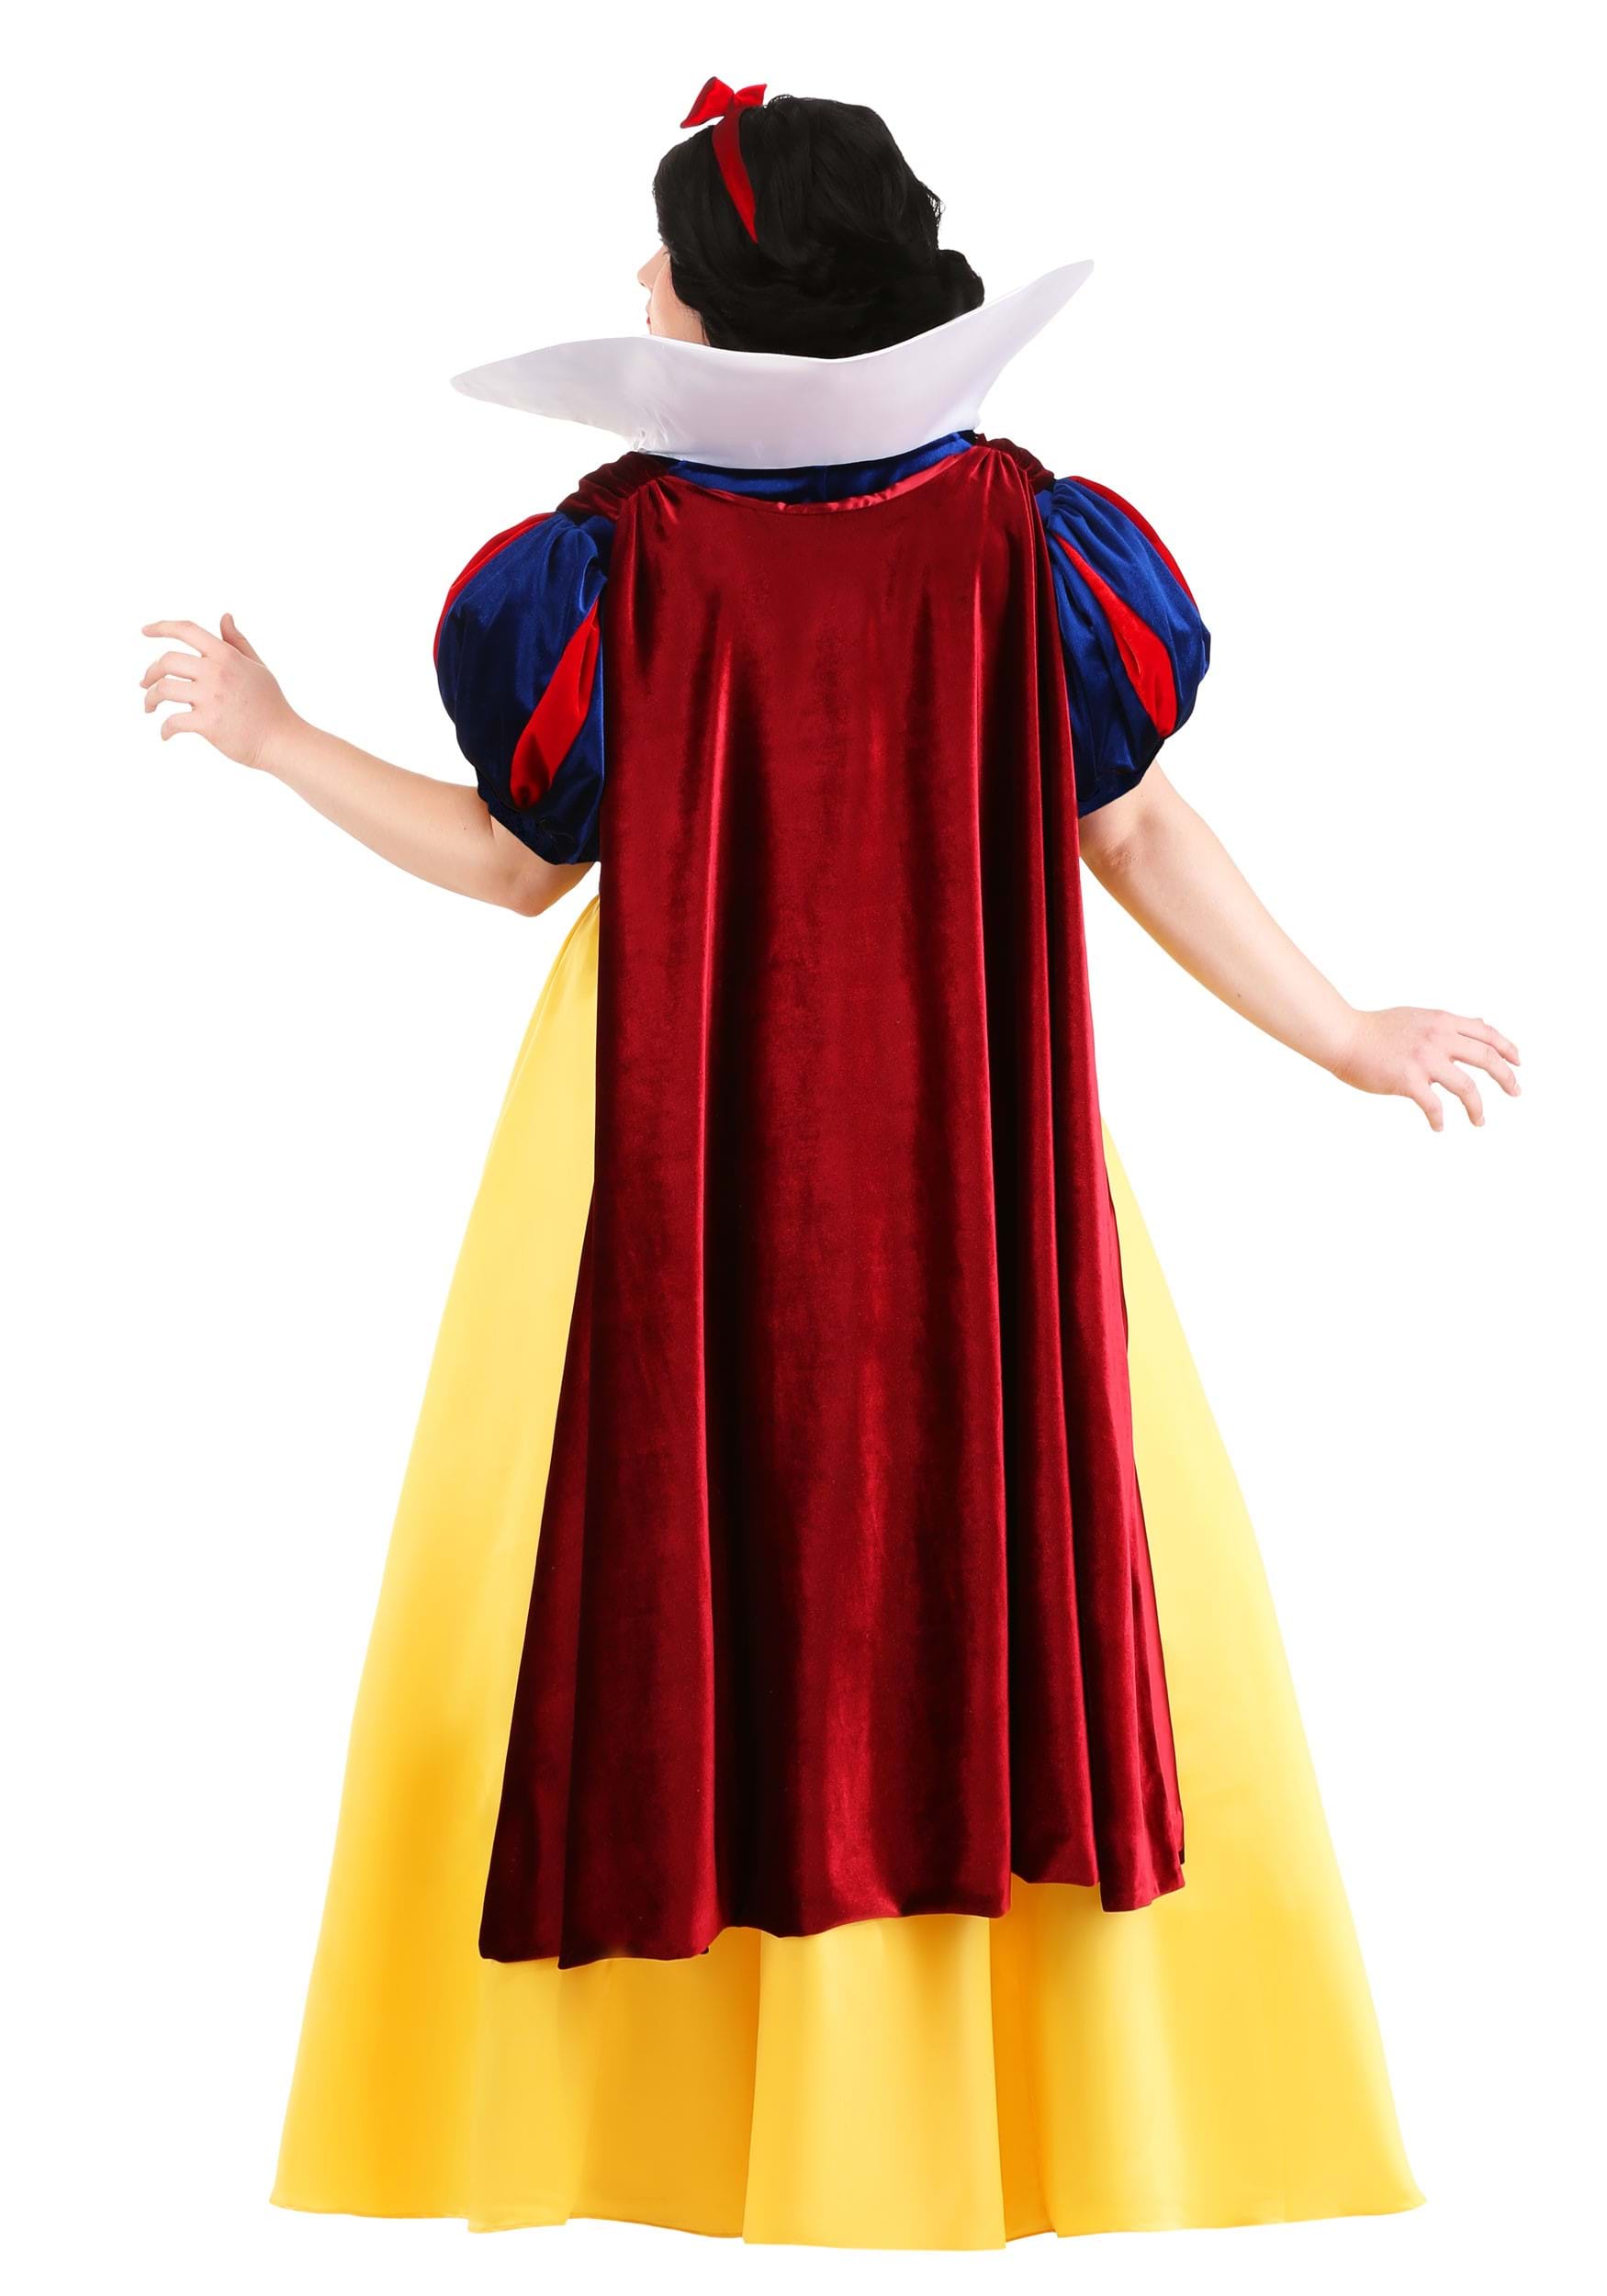 Plus Size Disney Snow White Costume For Women 0036